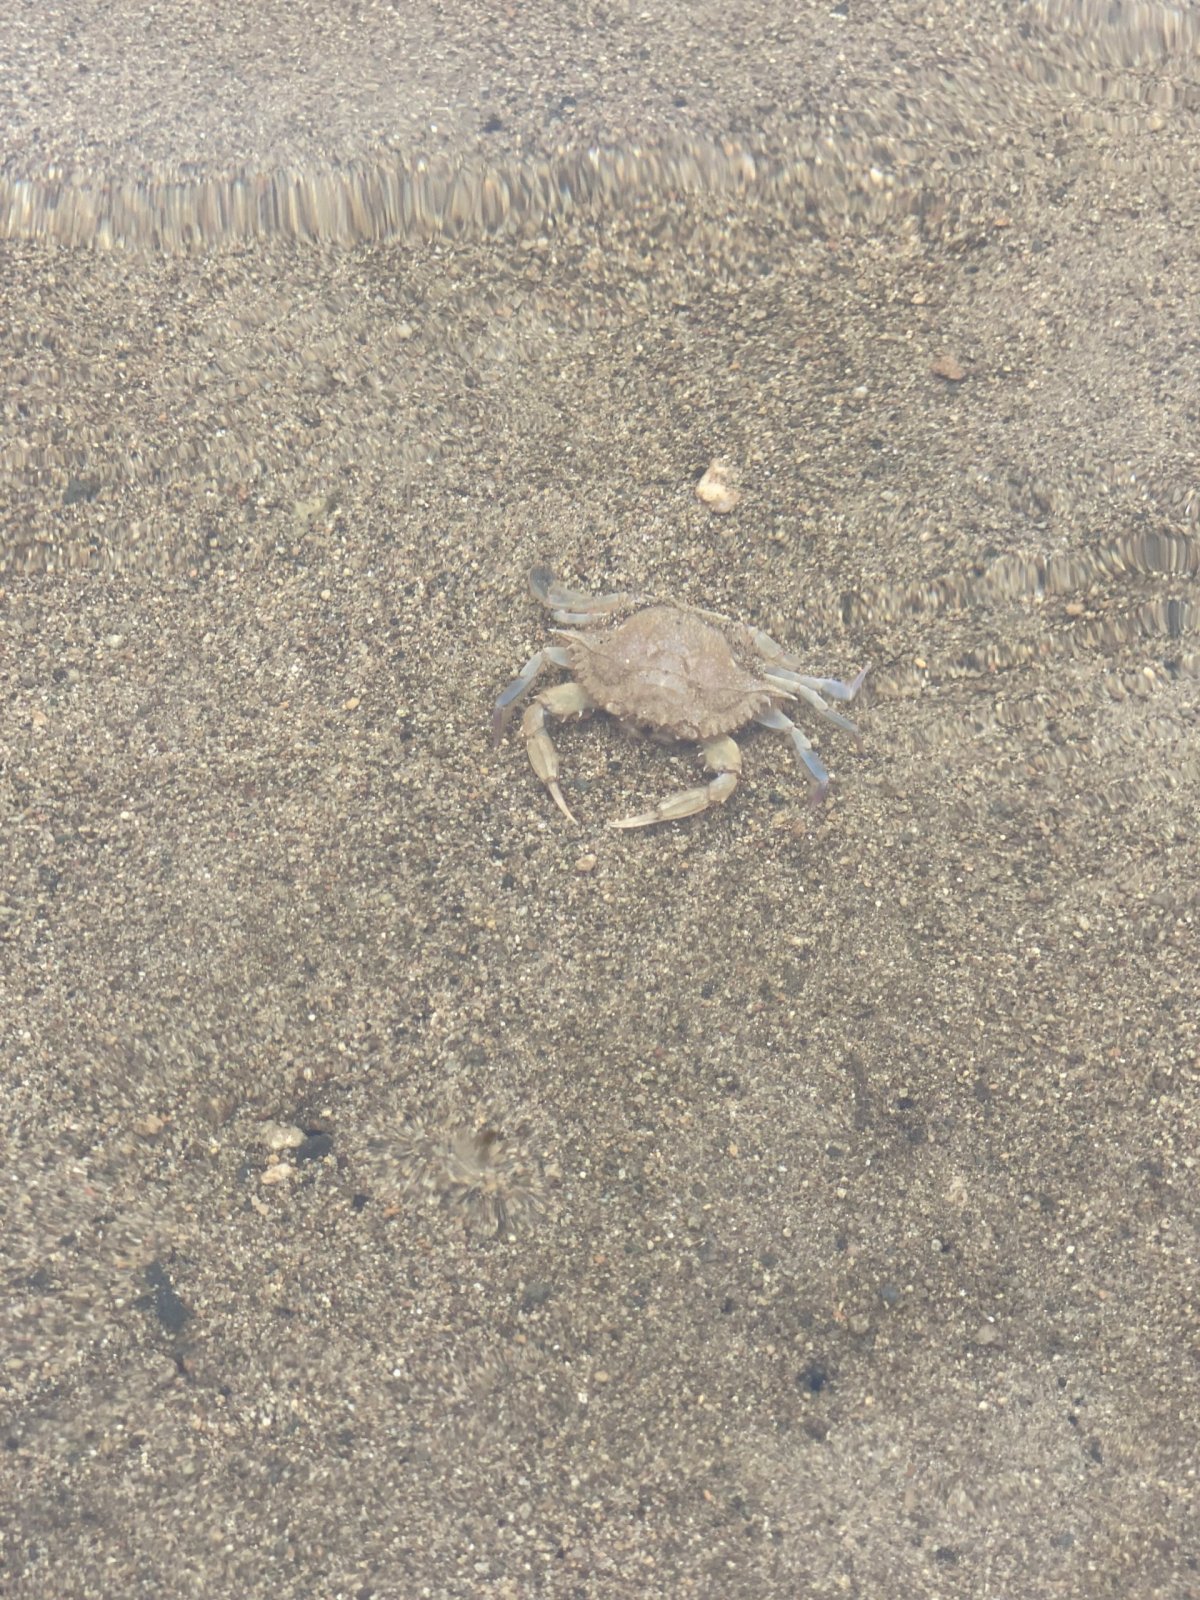 Krabík (mrtvej)